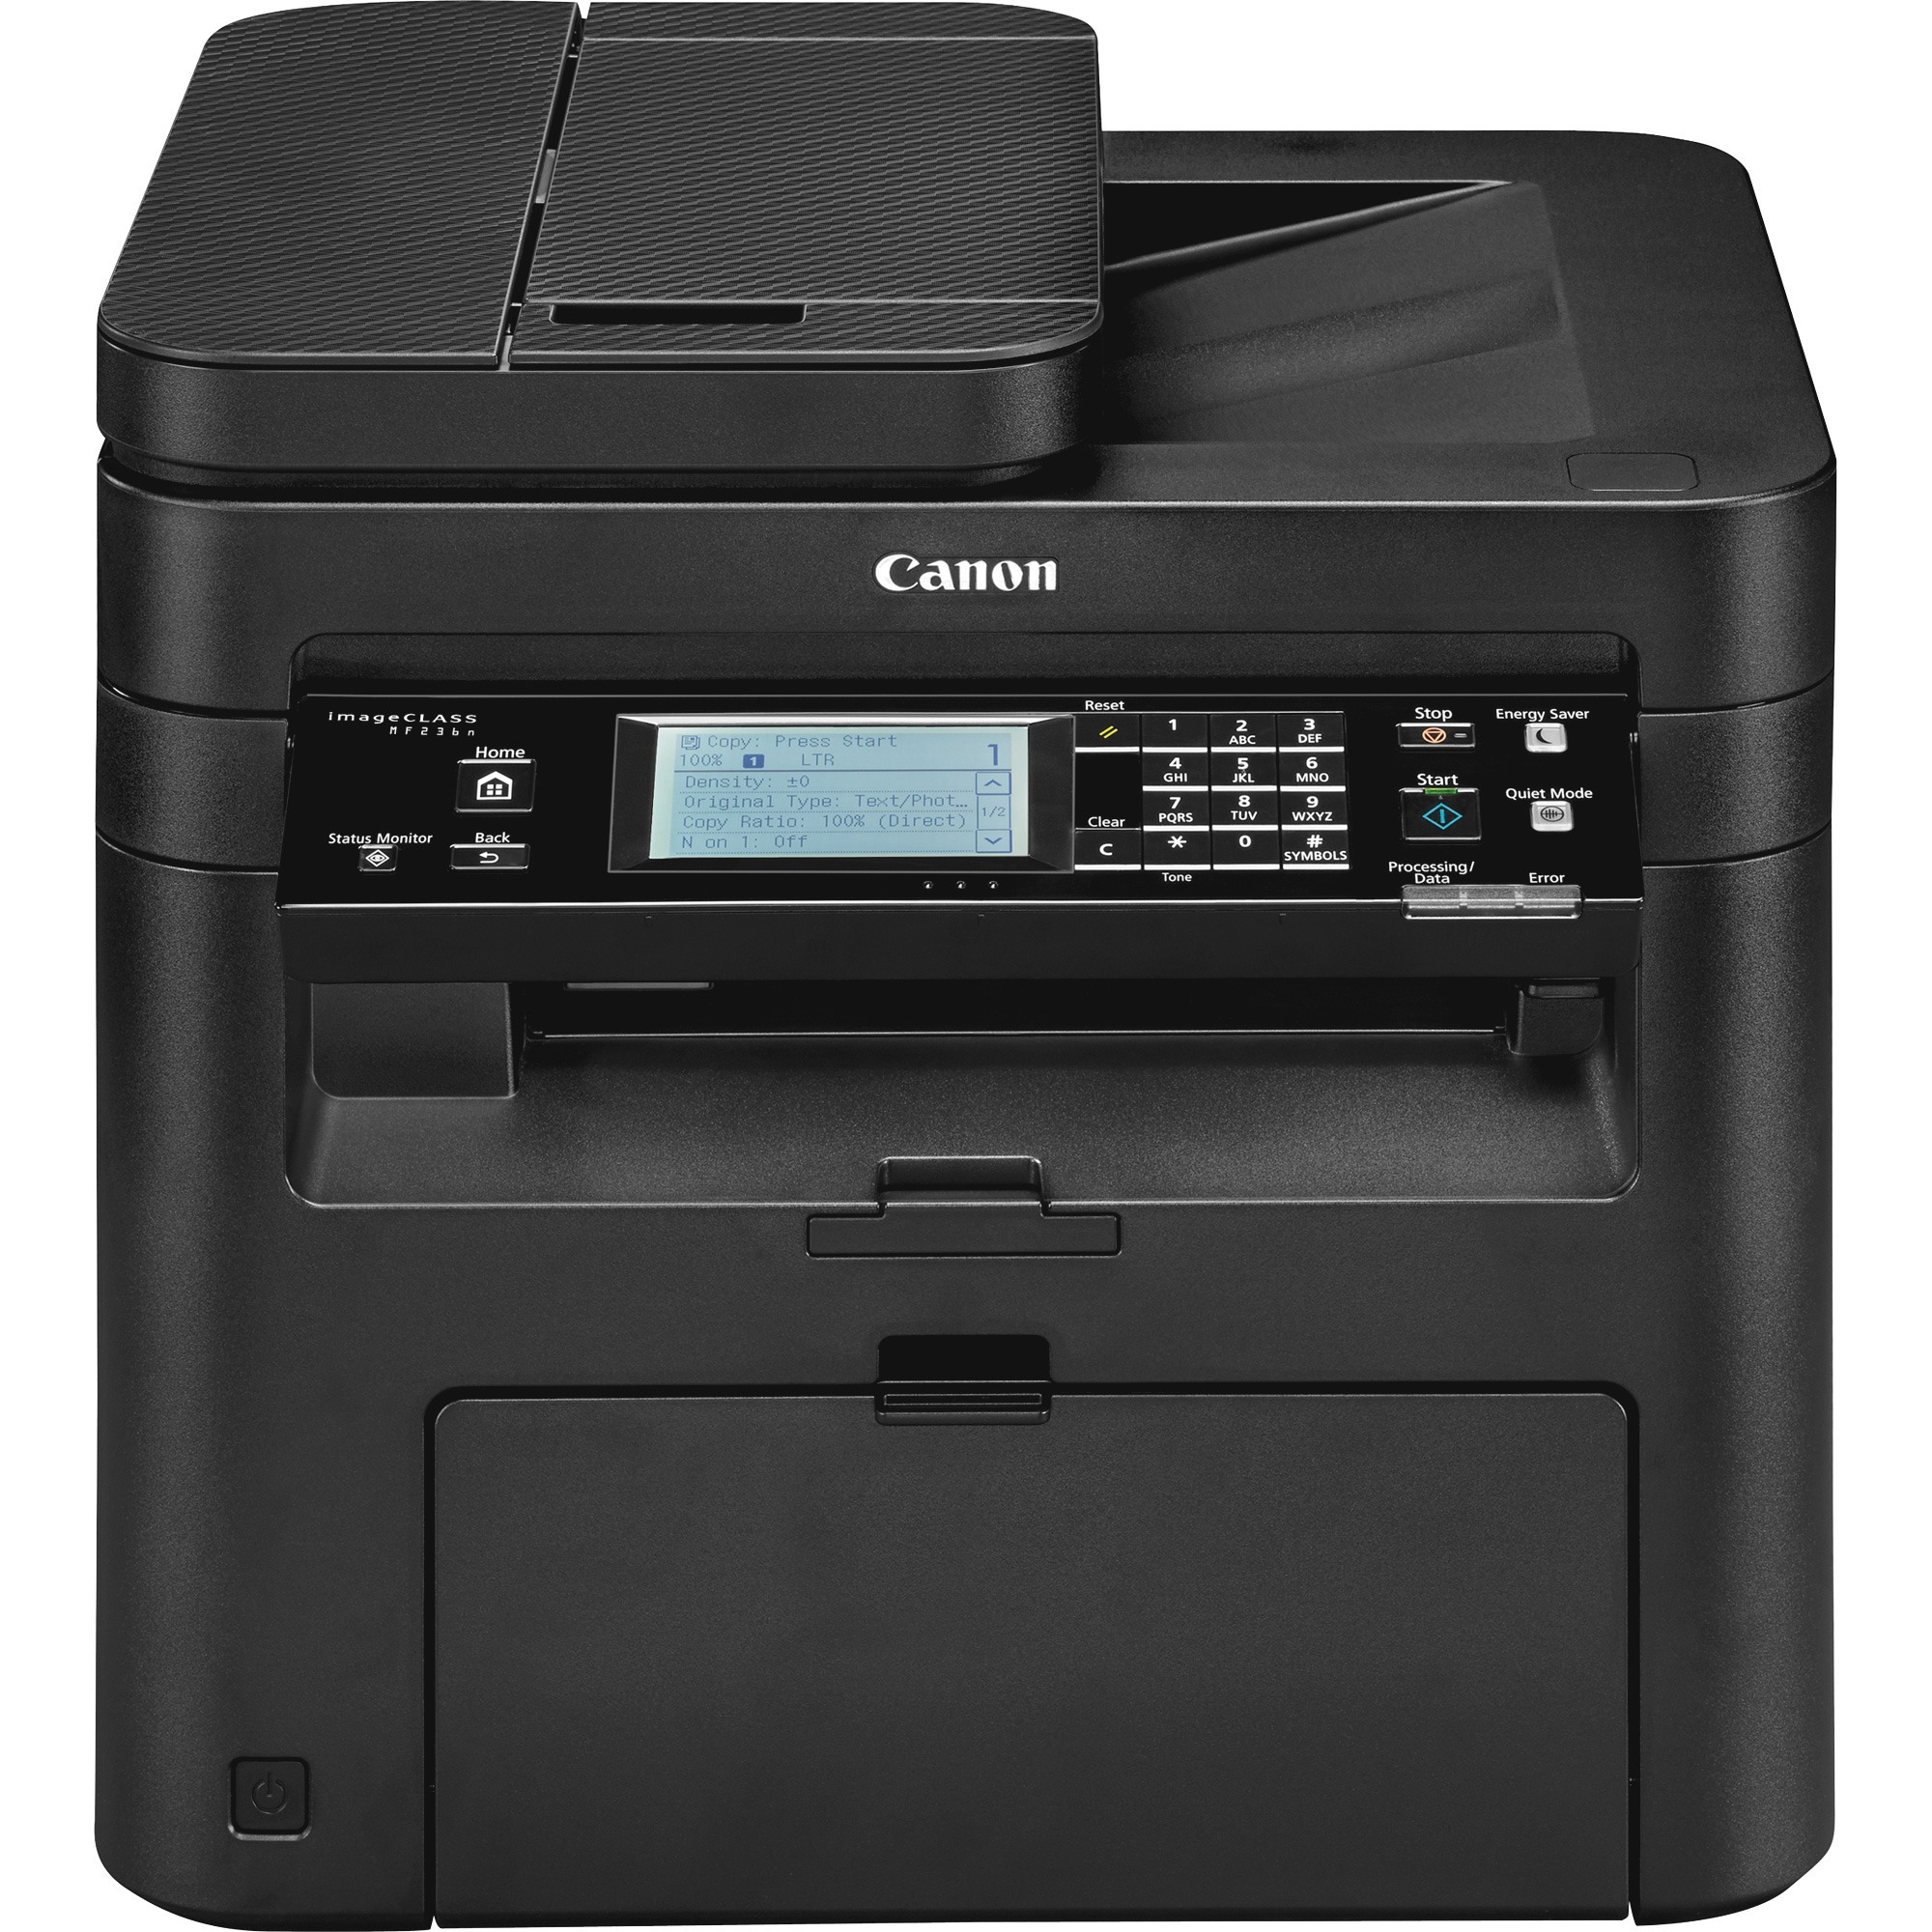 canon super g3 printer cover error